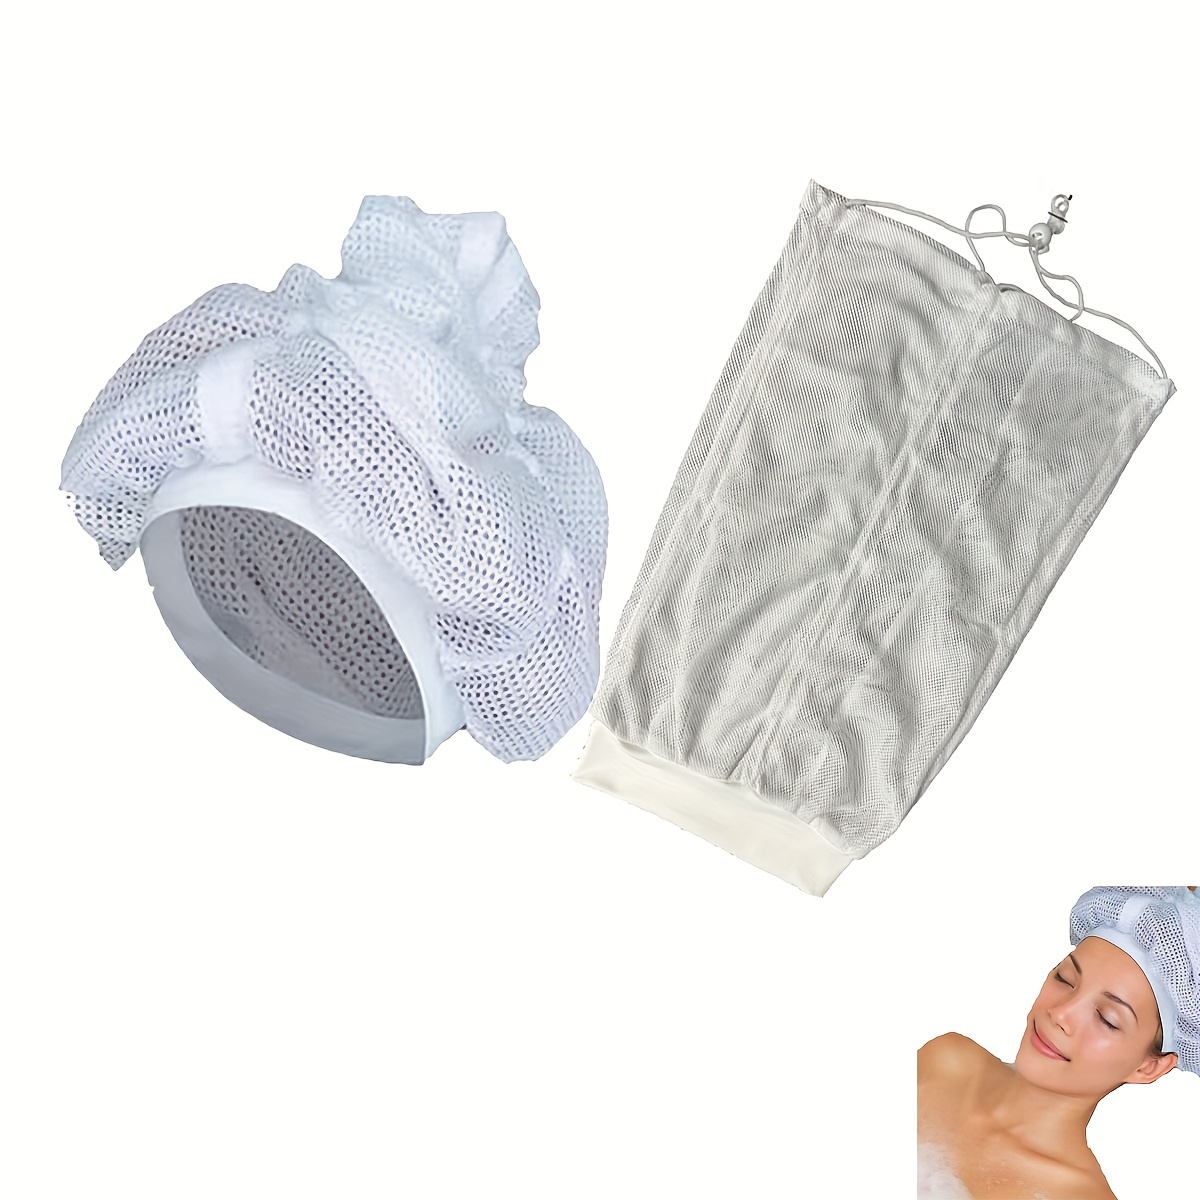 Net Plopping Cap For Drying Curly Hair, Net Plopping Bonnet